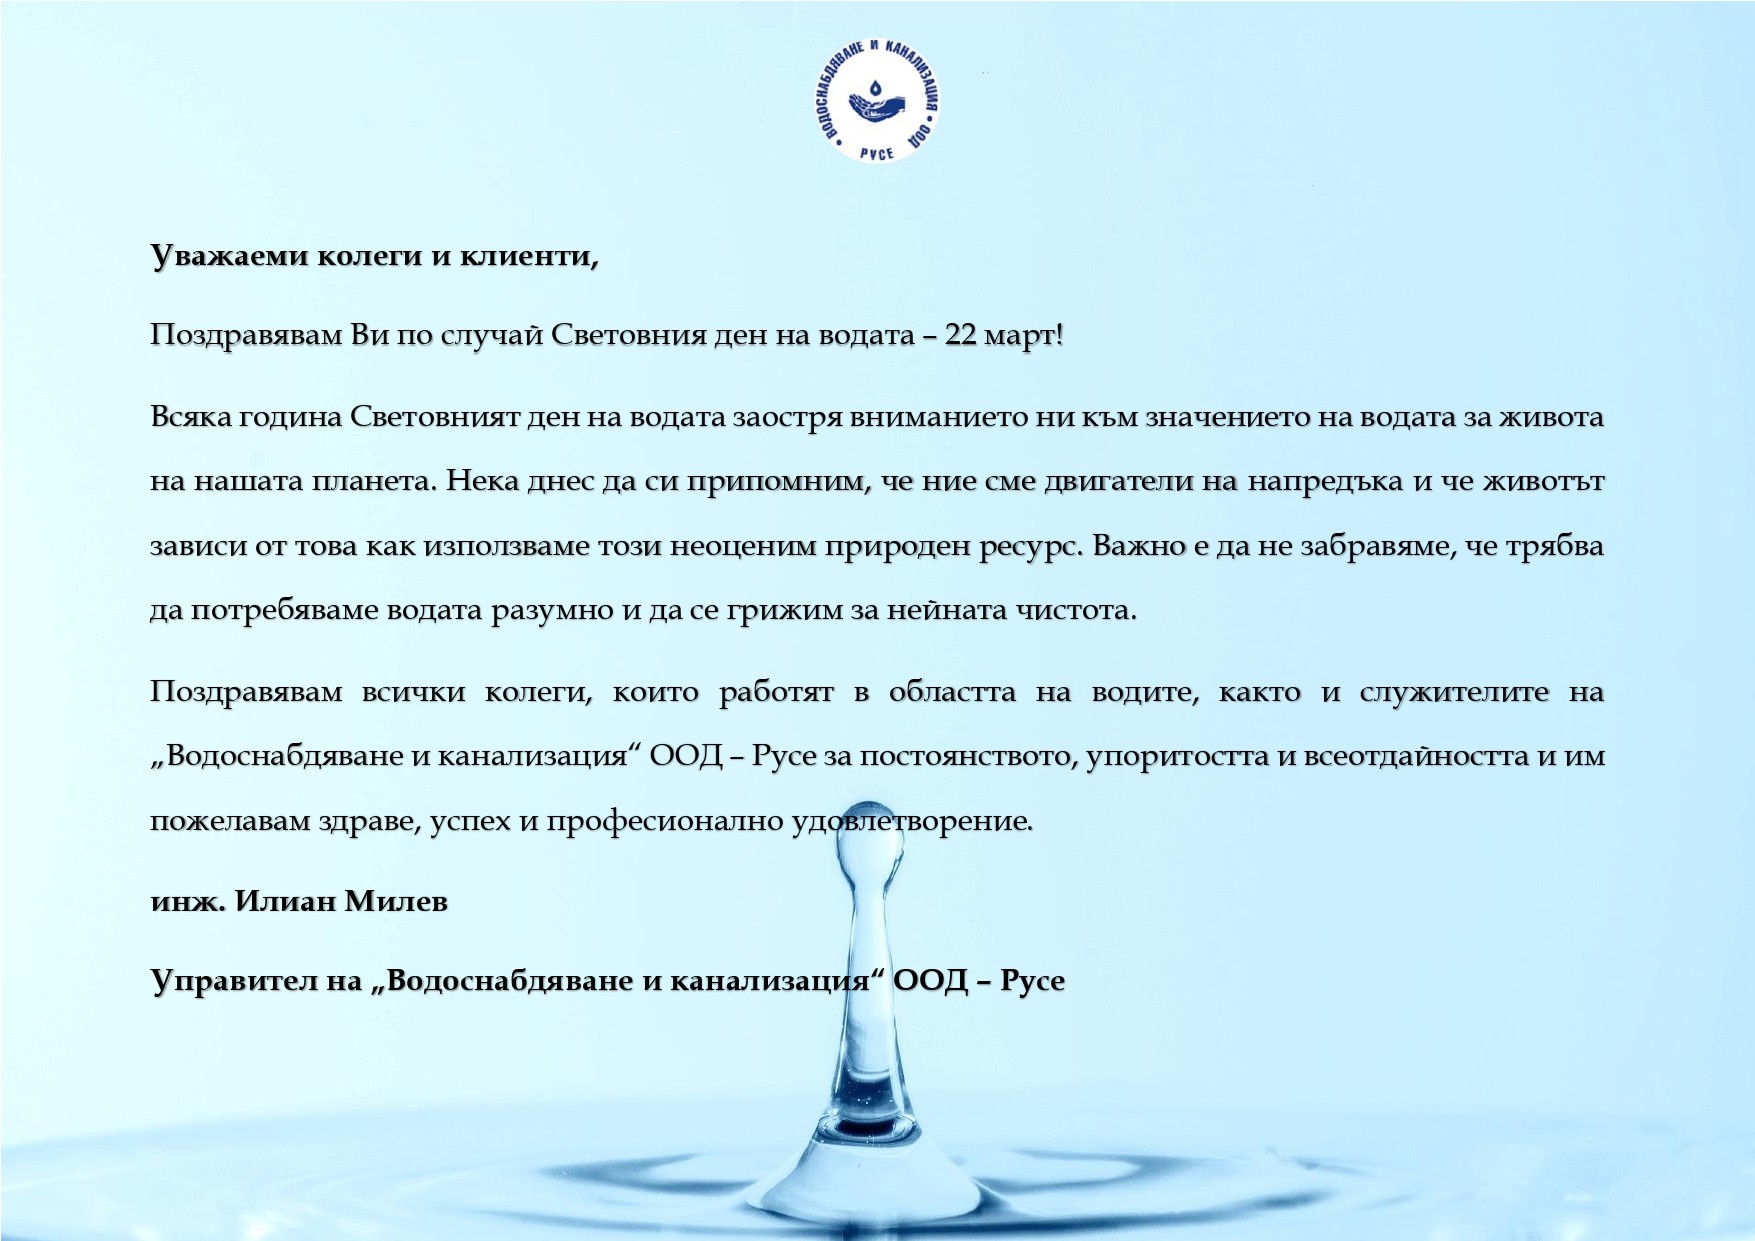 Инж. Илиан Милев: Поздравявам всички колеги и клиенти по случай Световния ден на водата!